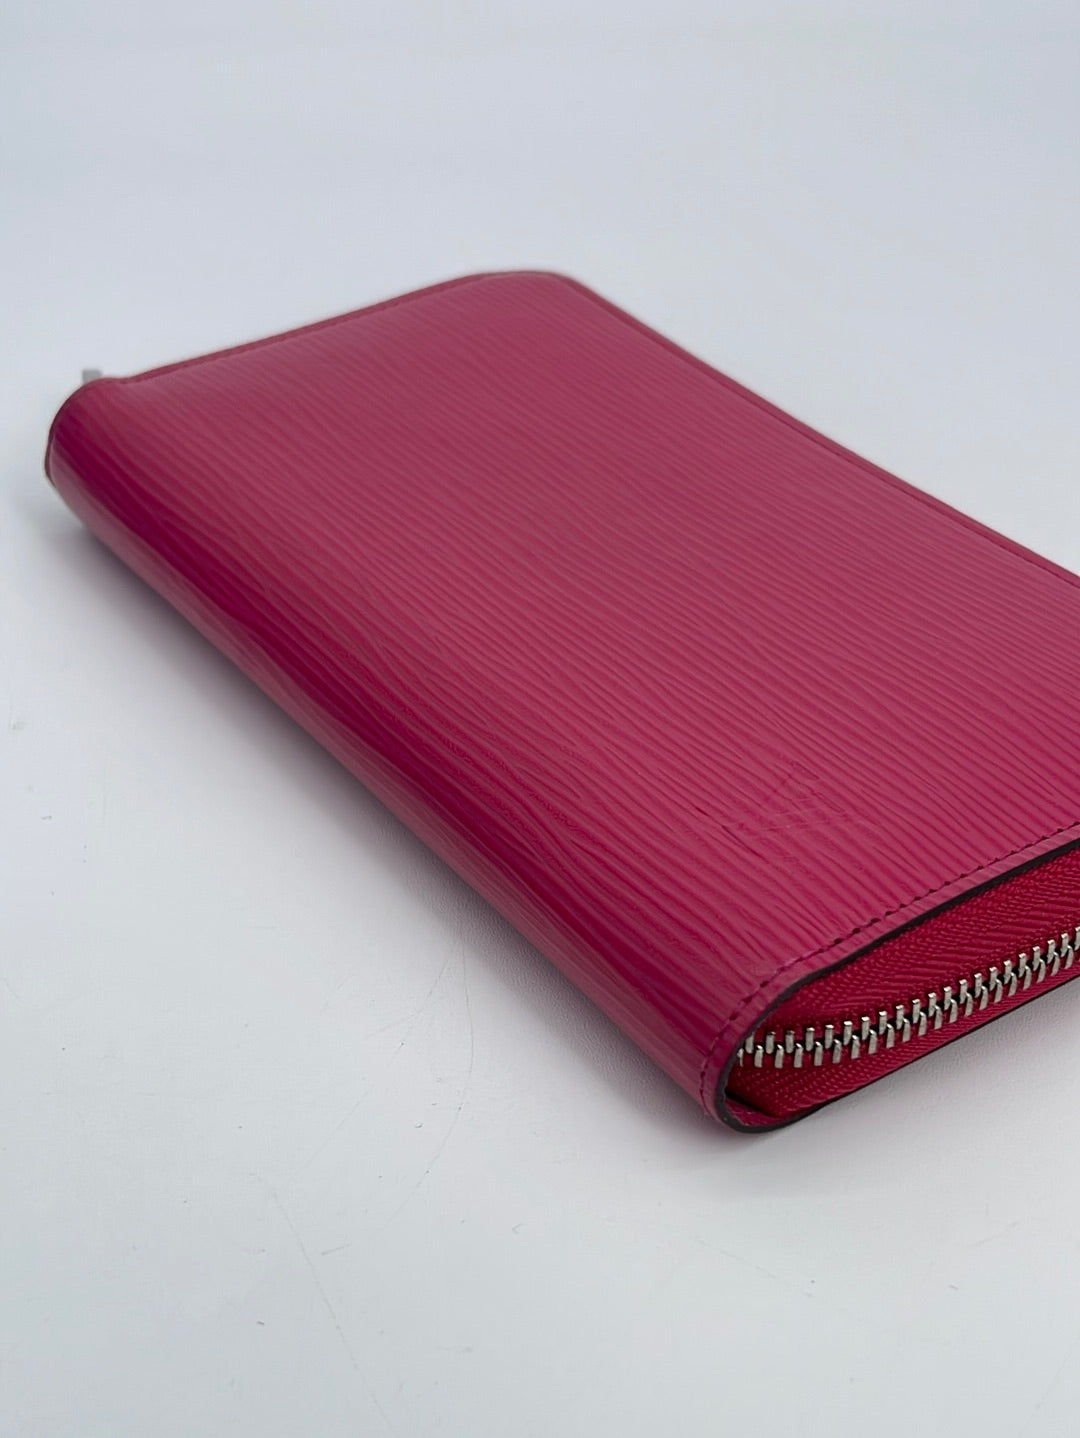 Louis Vuitton Purple Epi Zippy Organizer Wallet at the best price